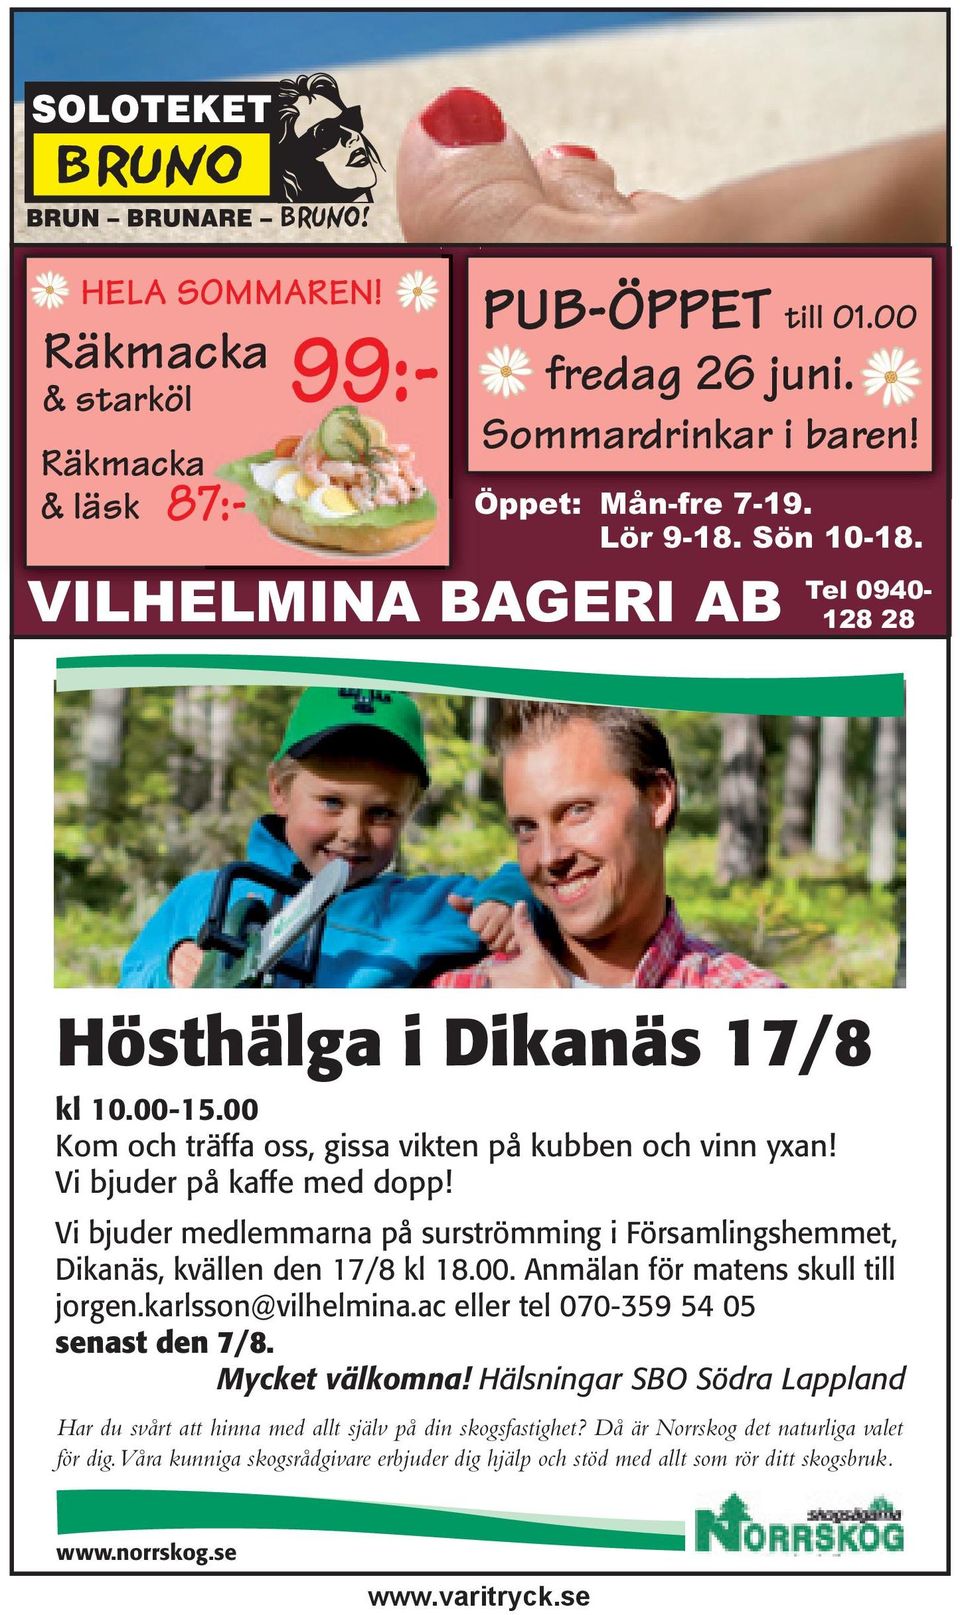 Vi bjuder medlemmarna på surströmming i Församlingshemmet, Dikanäs, kvällen den 17/8 kl 18.00. Anmälan för matens skull till jorgen.karlsson@vilhelmina.ac eller tel 070-359 54 05 senast den 7/8.